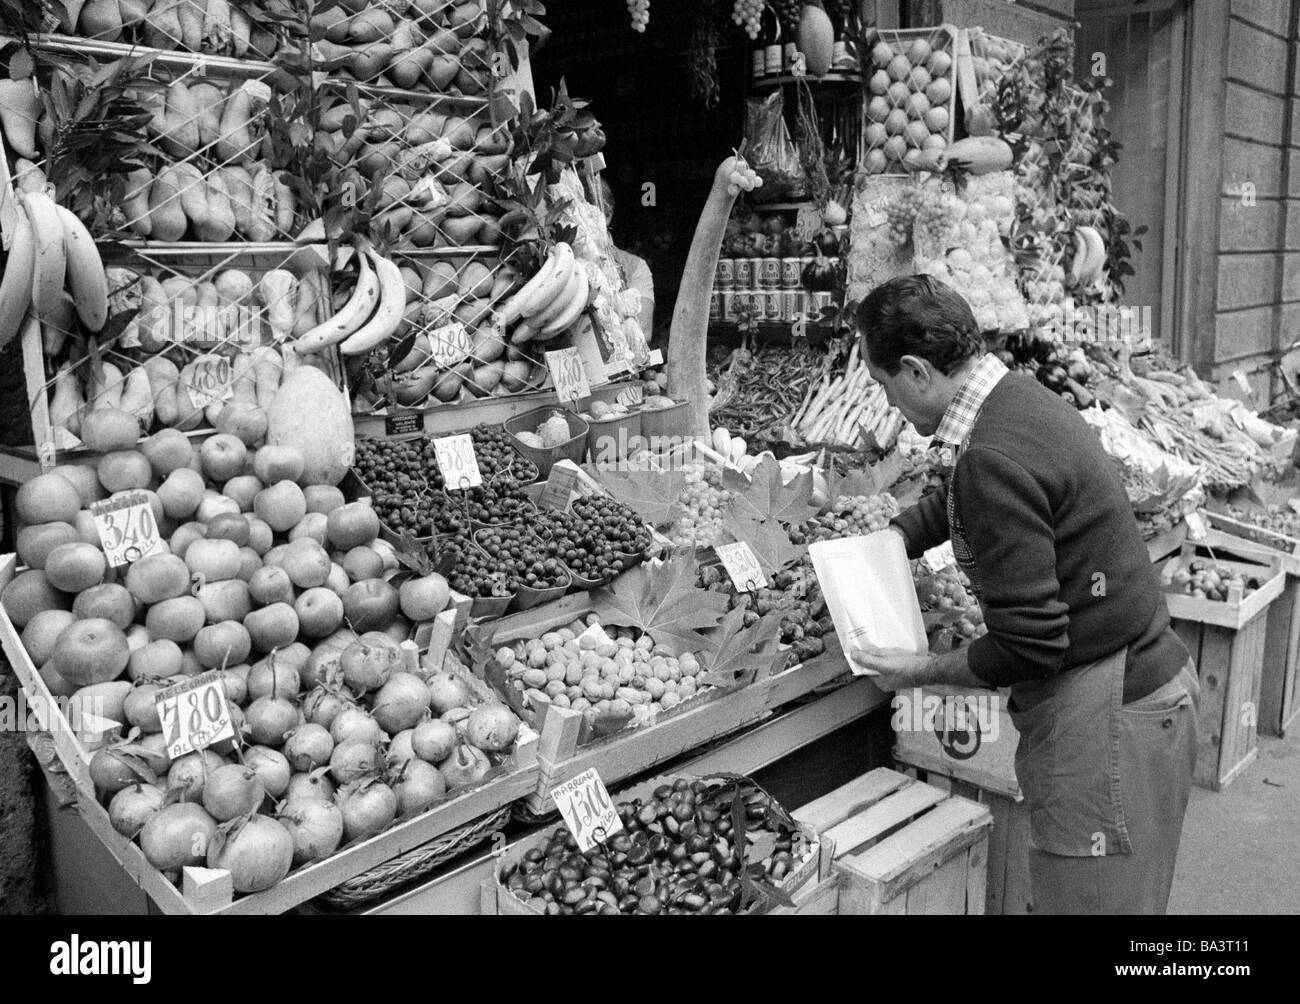 70er Jahre, schwarz / weiß Foto, Menschen, Wochenmarkt, Markt, Stall mit Obst und Gemüse, Verkäufer, Vermarkter, im Alter von 40 bis 50 Jahre, Italien, Lombardei, Mailand Stockfoto